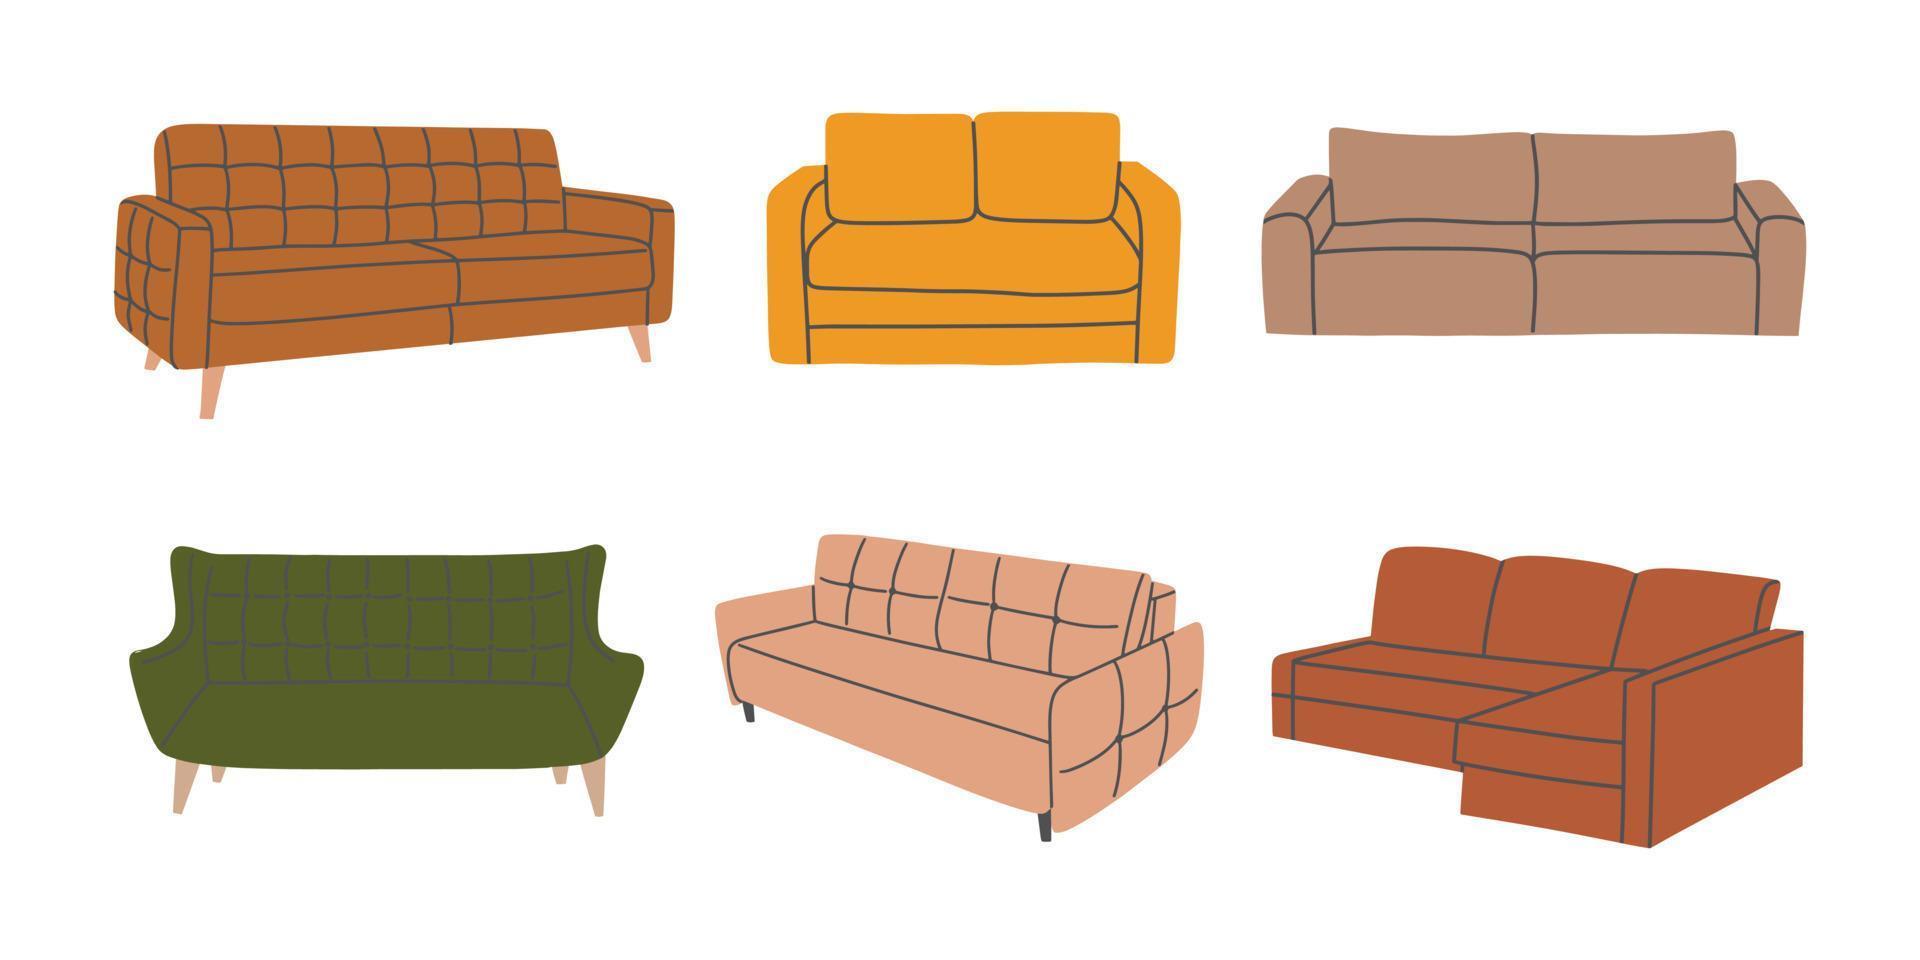 conjunto de vários sofás coloridos da moda. coleção de móveis macios para design de interiores e decoração. ilustração vetorial desenhada à mão isolada no fundo branco vetor